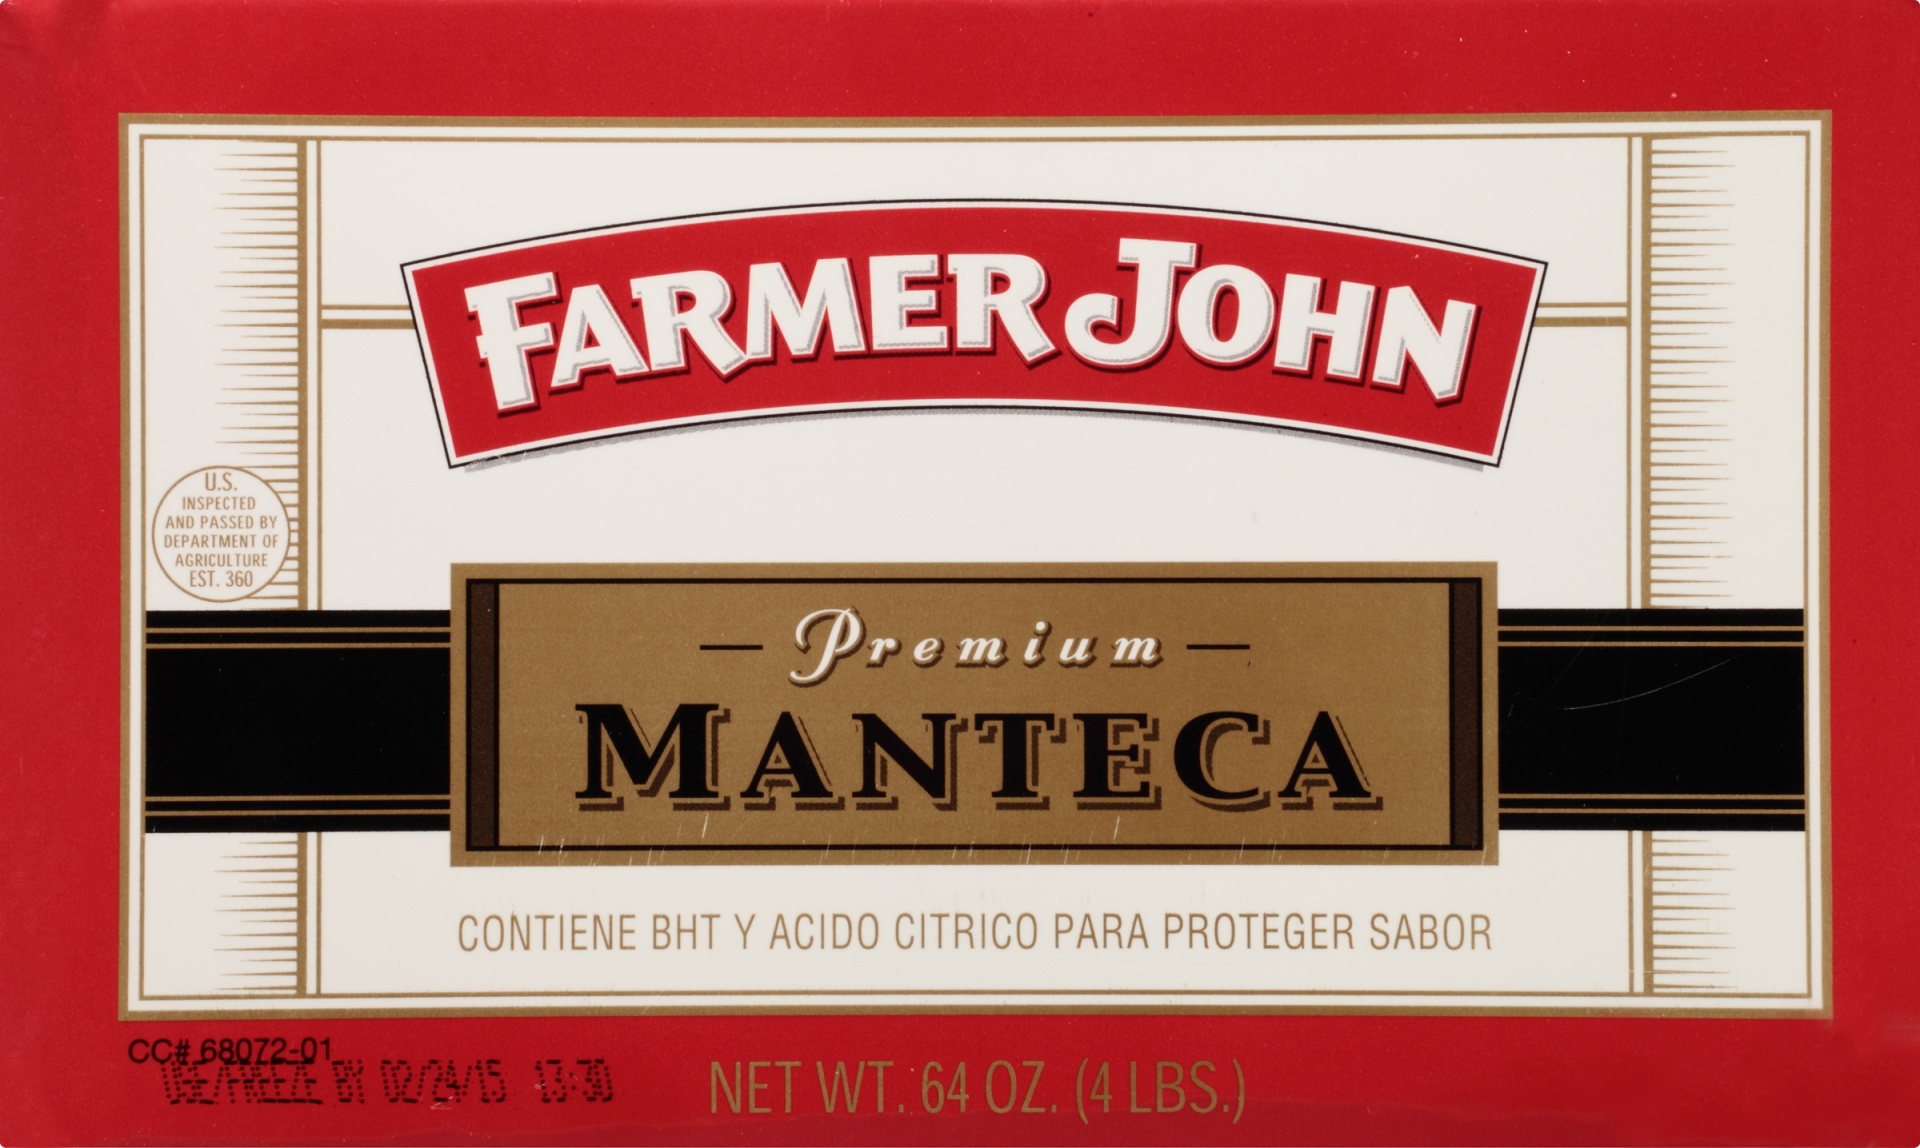 slide 6 of 7, Farmer John Manteca, 4 lb